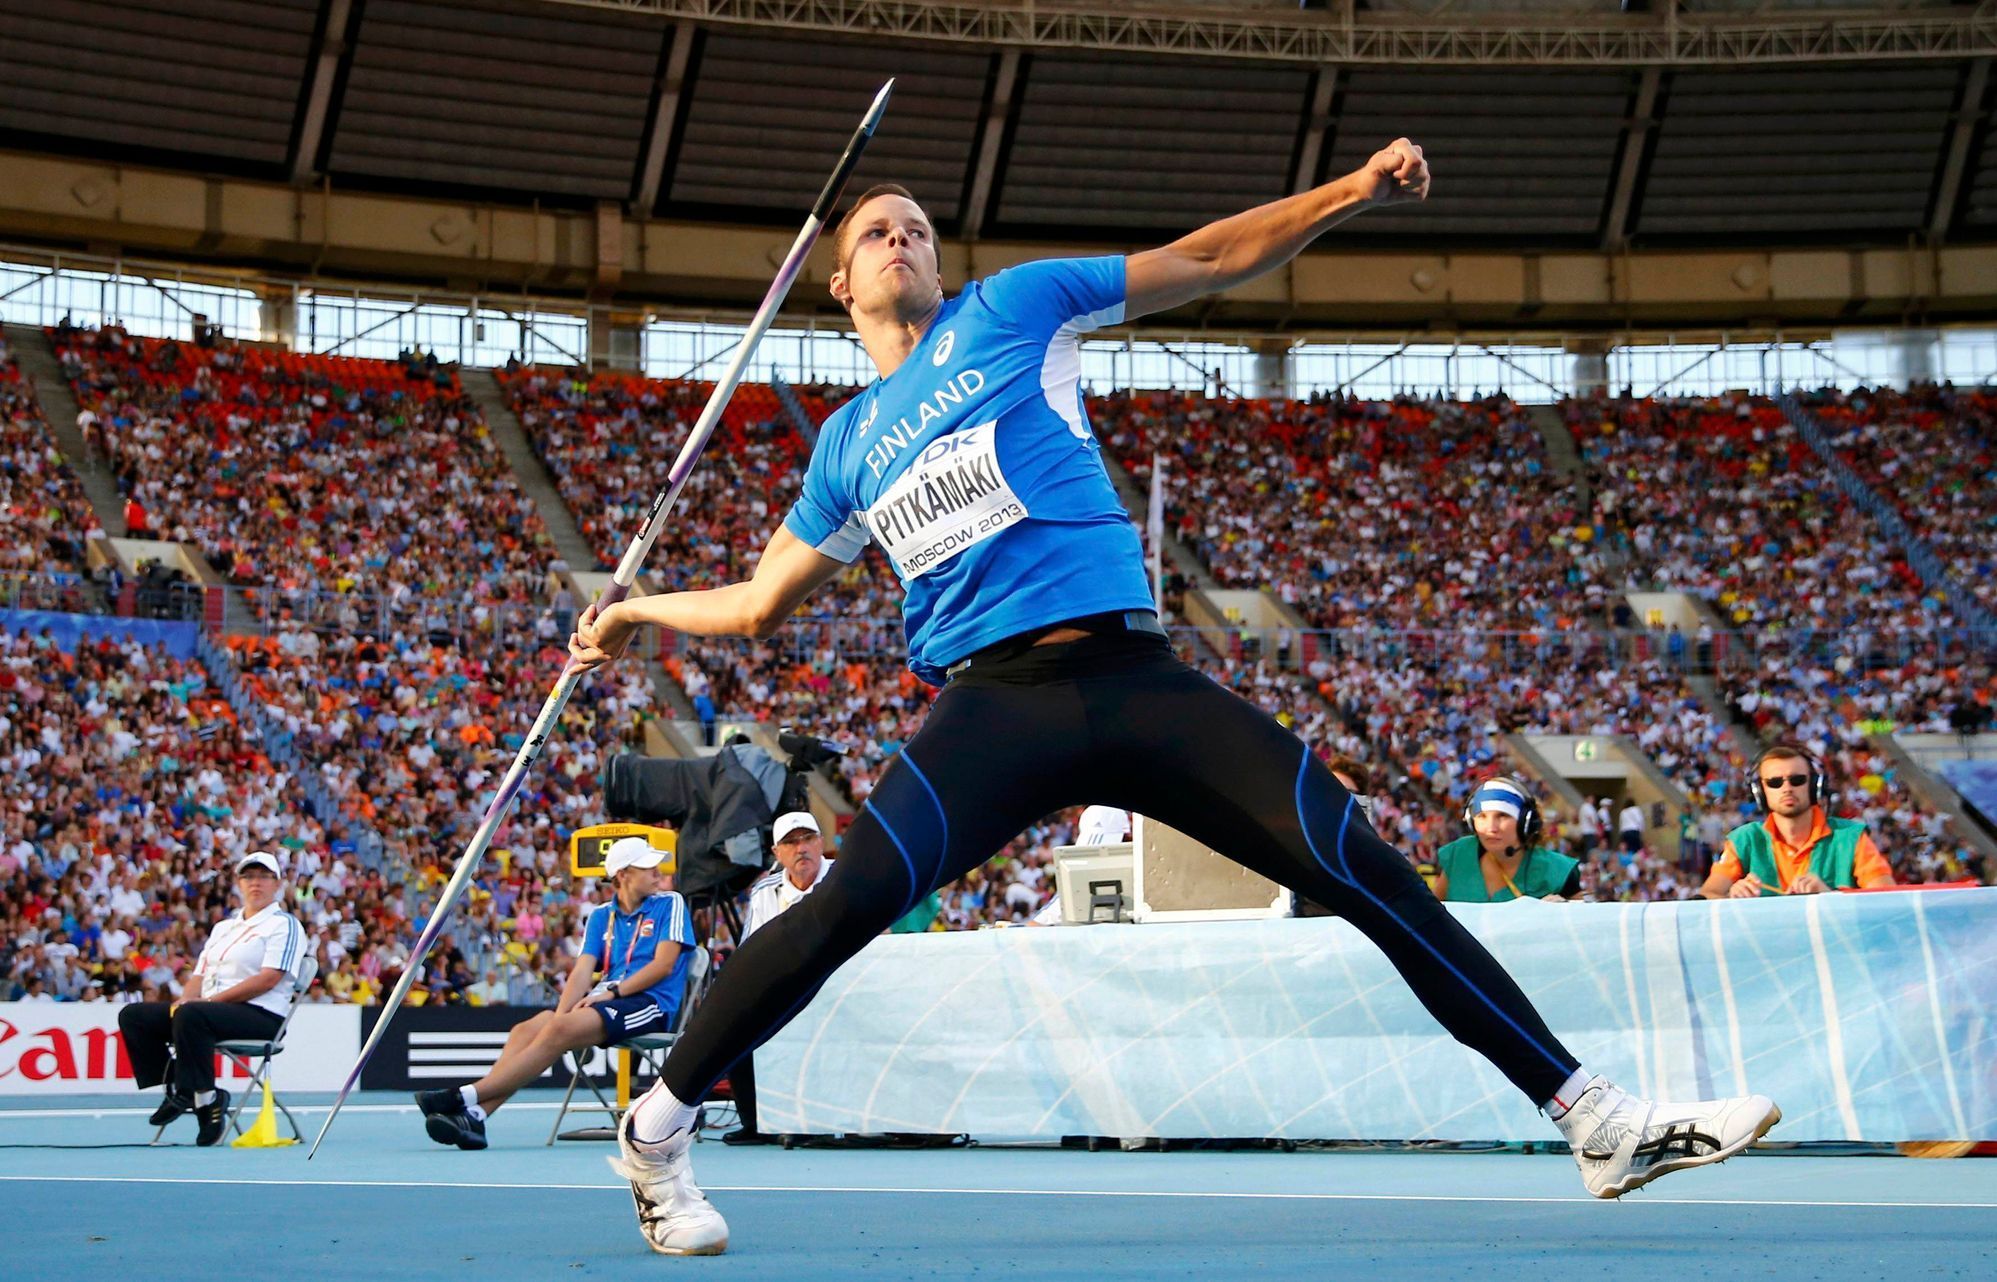 MS v atletice 2013, oštěp mužů: Tero Pitkämaki